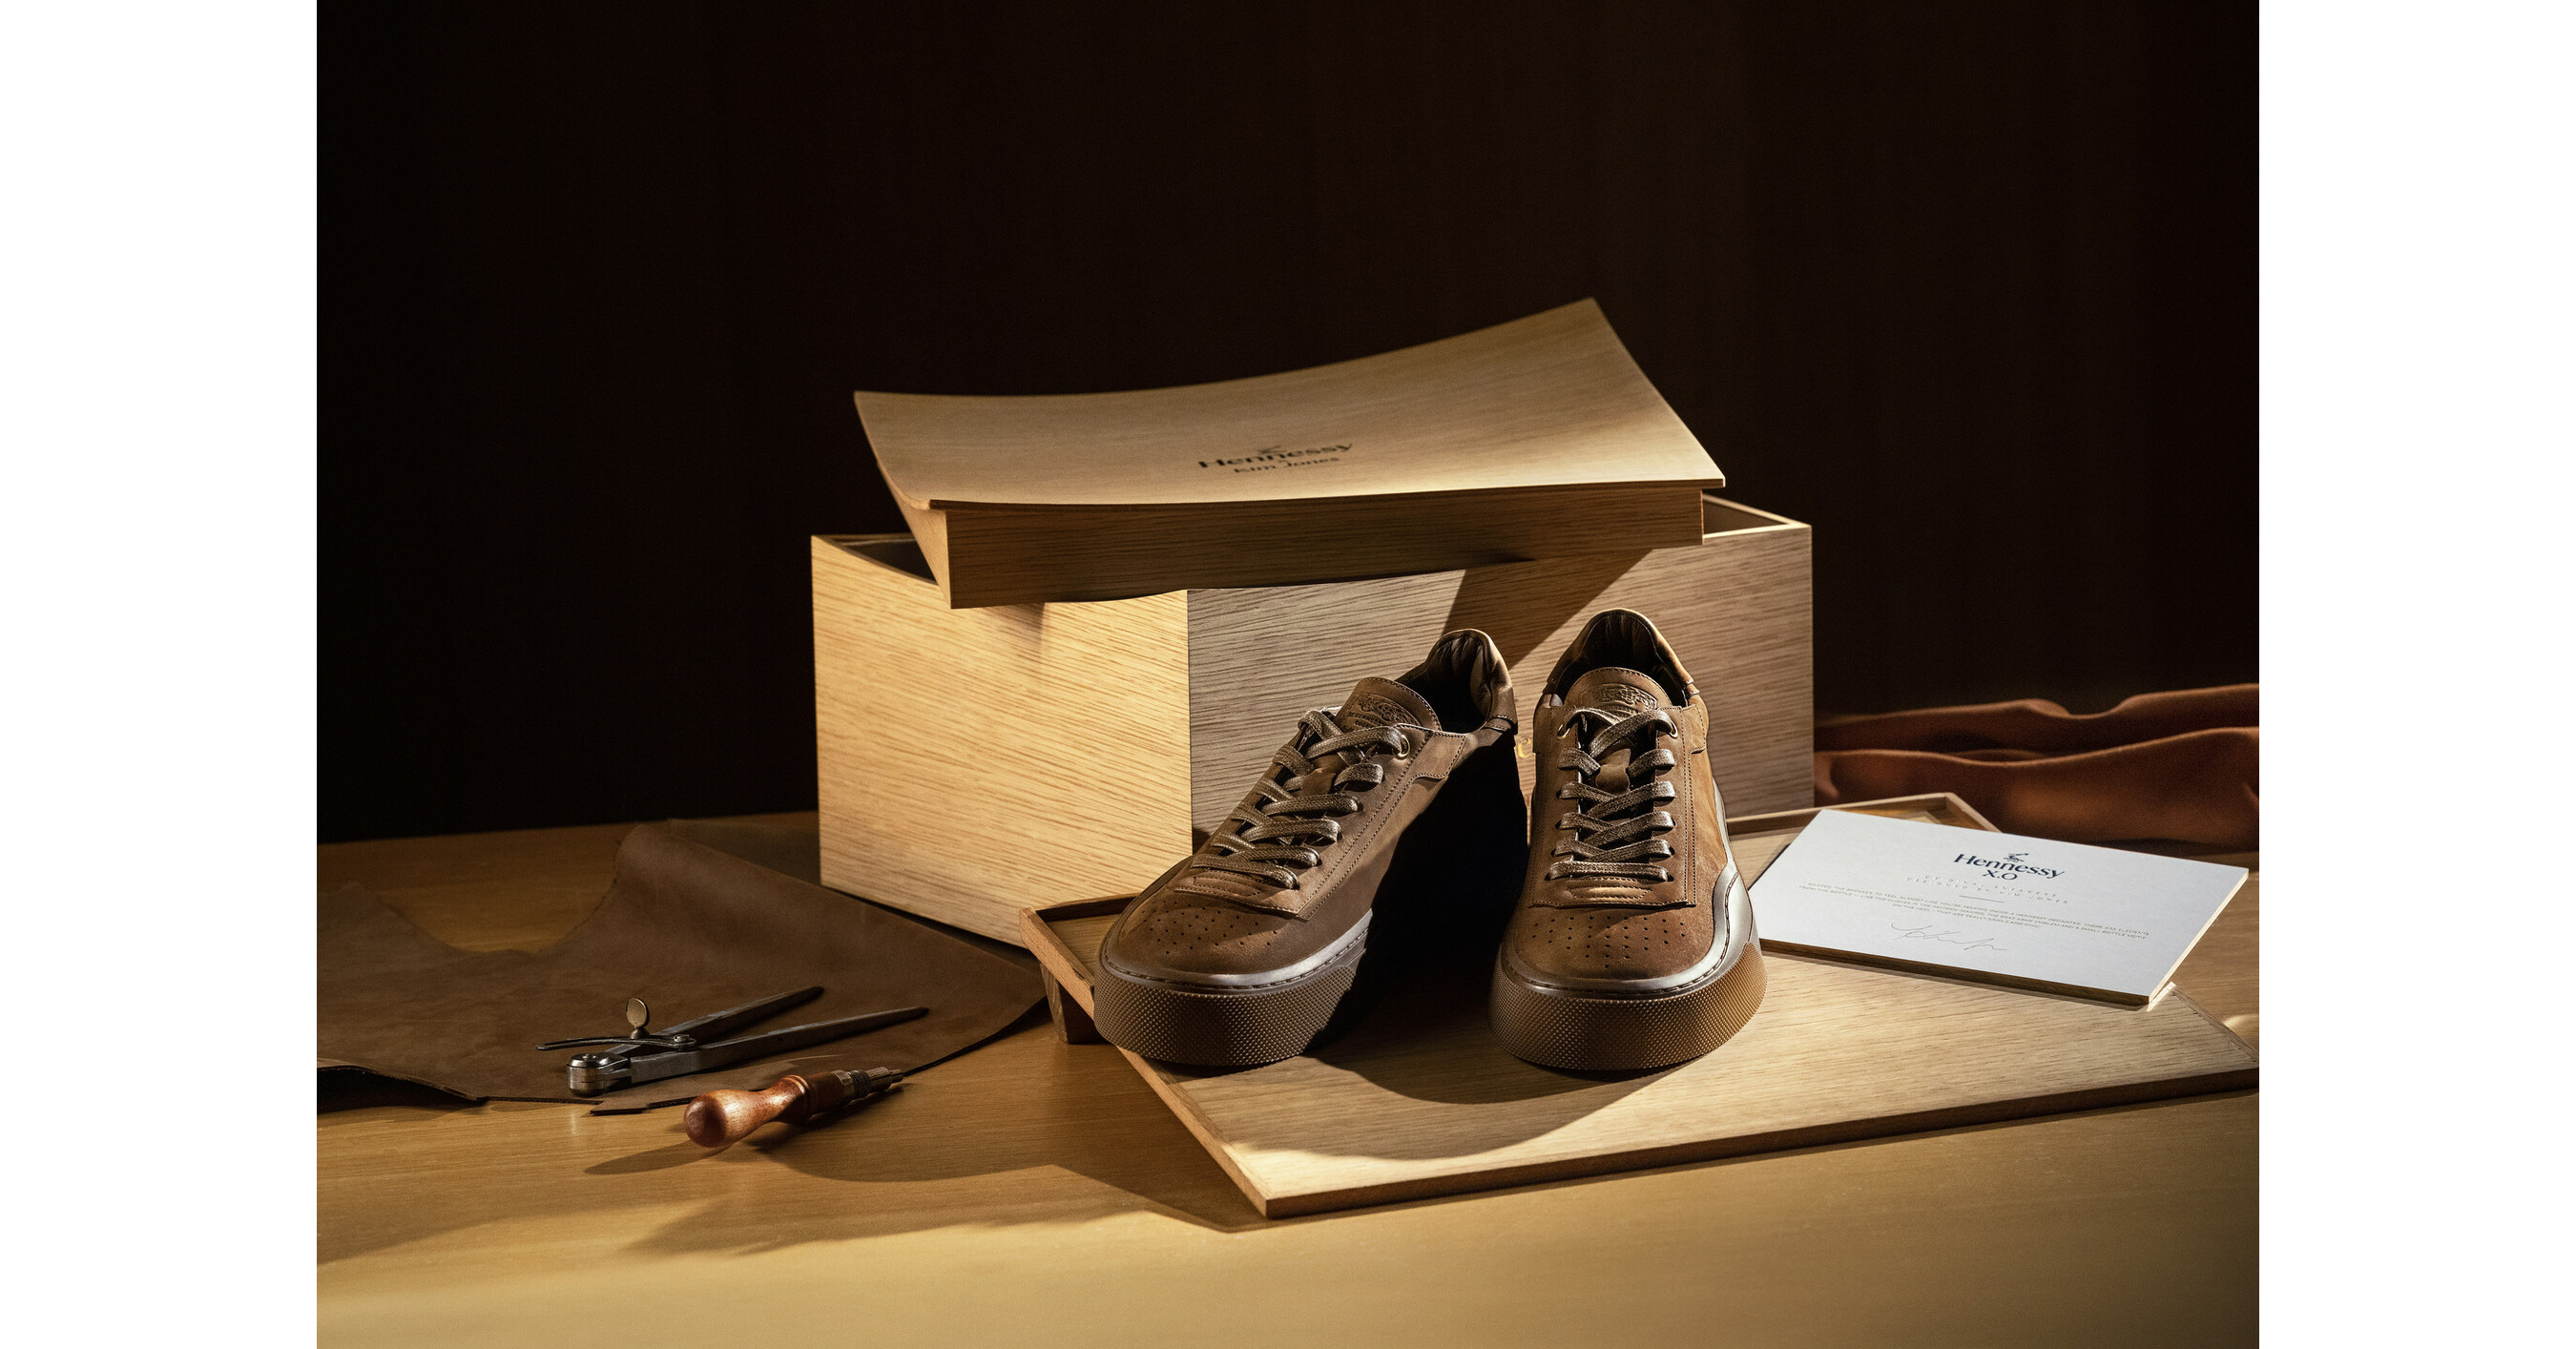 776 Louis Vuitton Shoes Images, Stock Photos, 3D objects, & Vectors